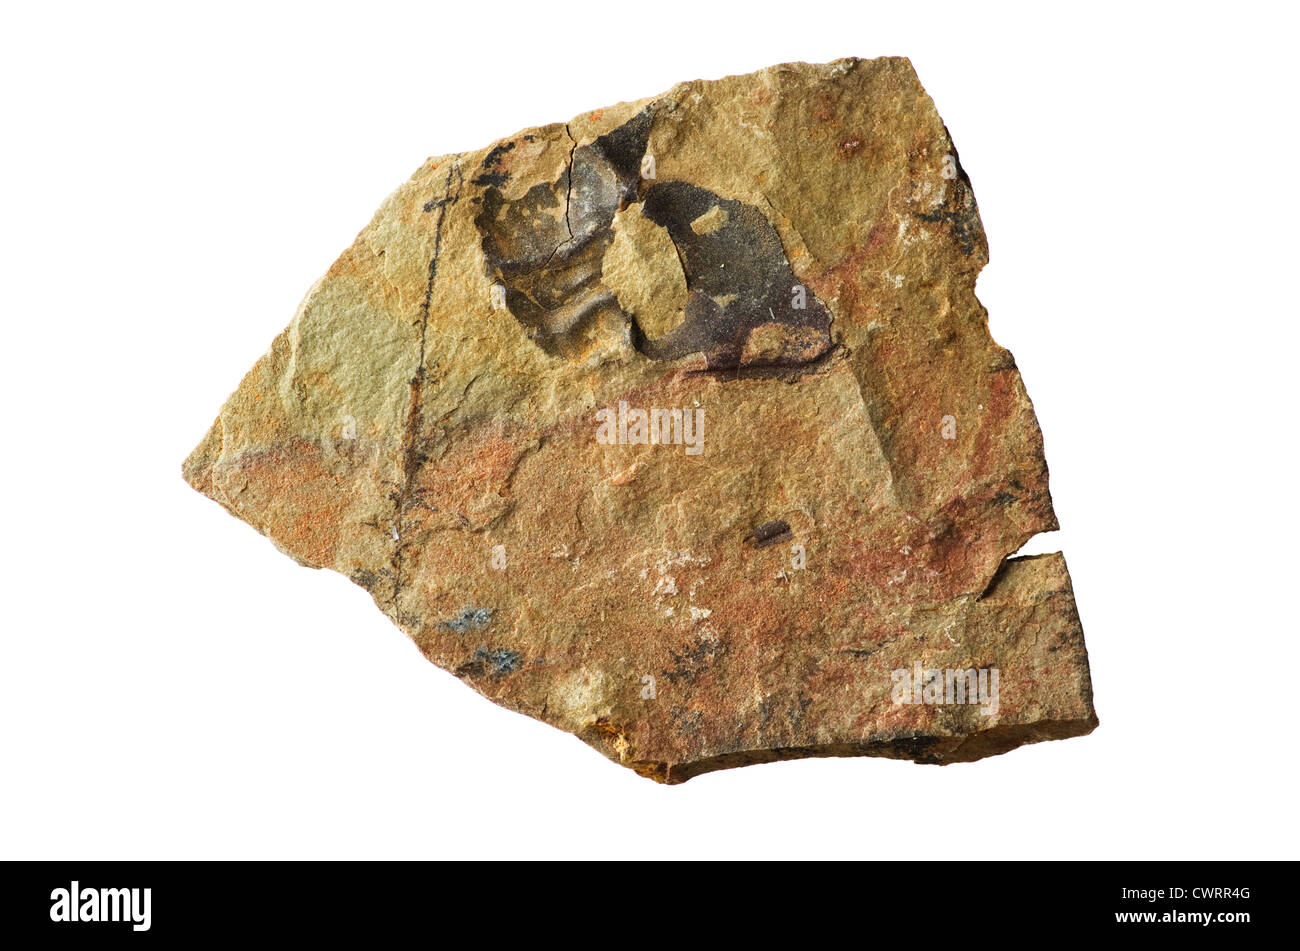 Schiste cambrien avec Ollenelid rock broken trilobite fossile dans il isolé sur fond blanc Banque D'Images